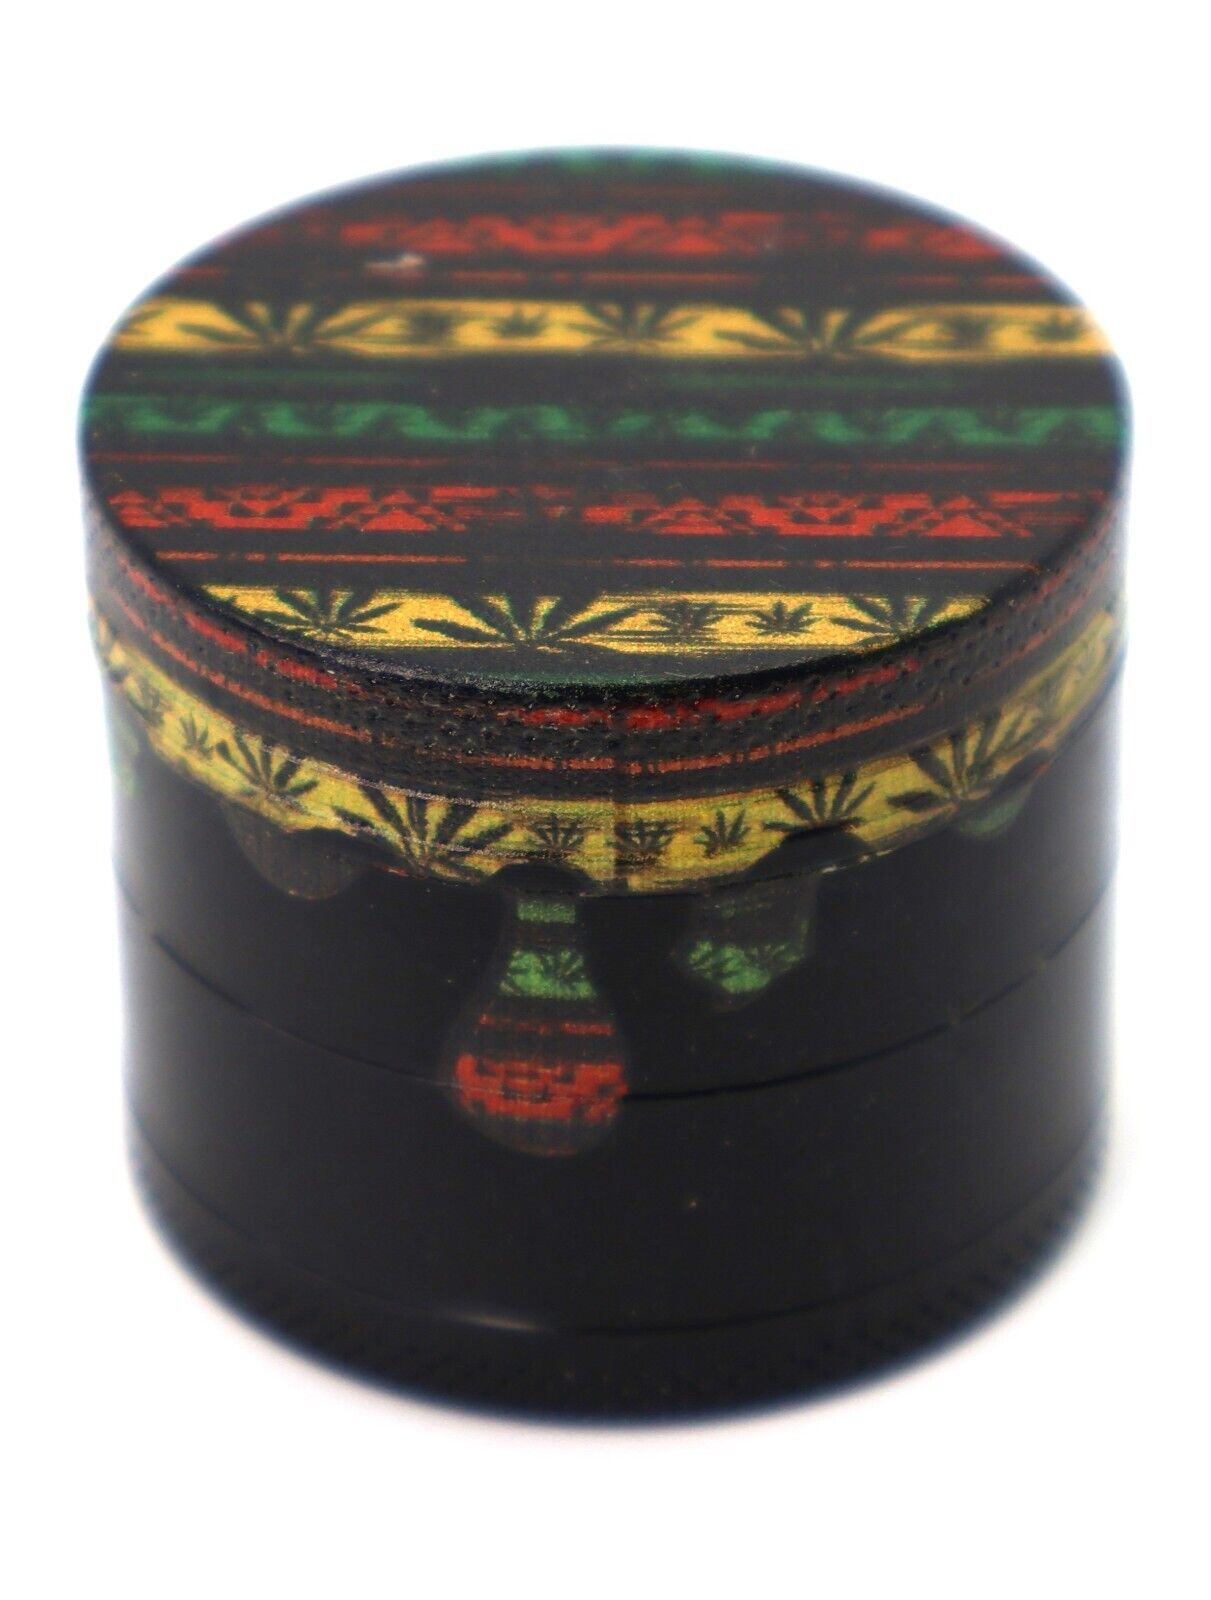 Best 40mm Spice Herb Tobacco Grinder 4 Piece Crusher Aluminum Grinder Magnetic